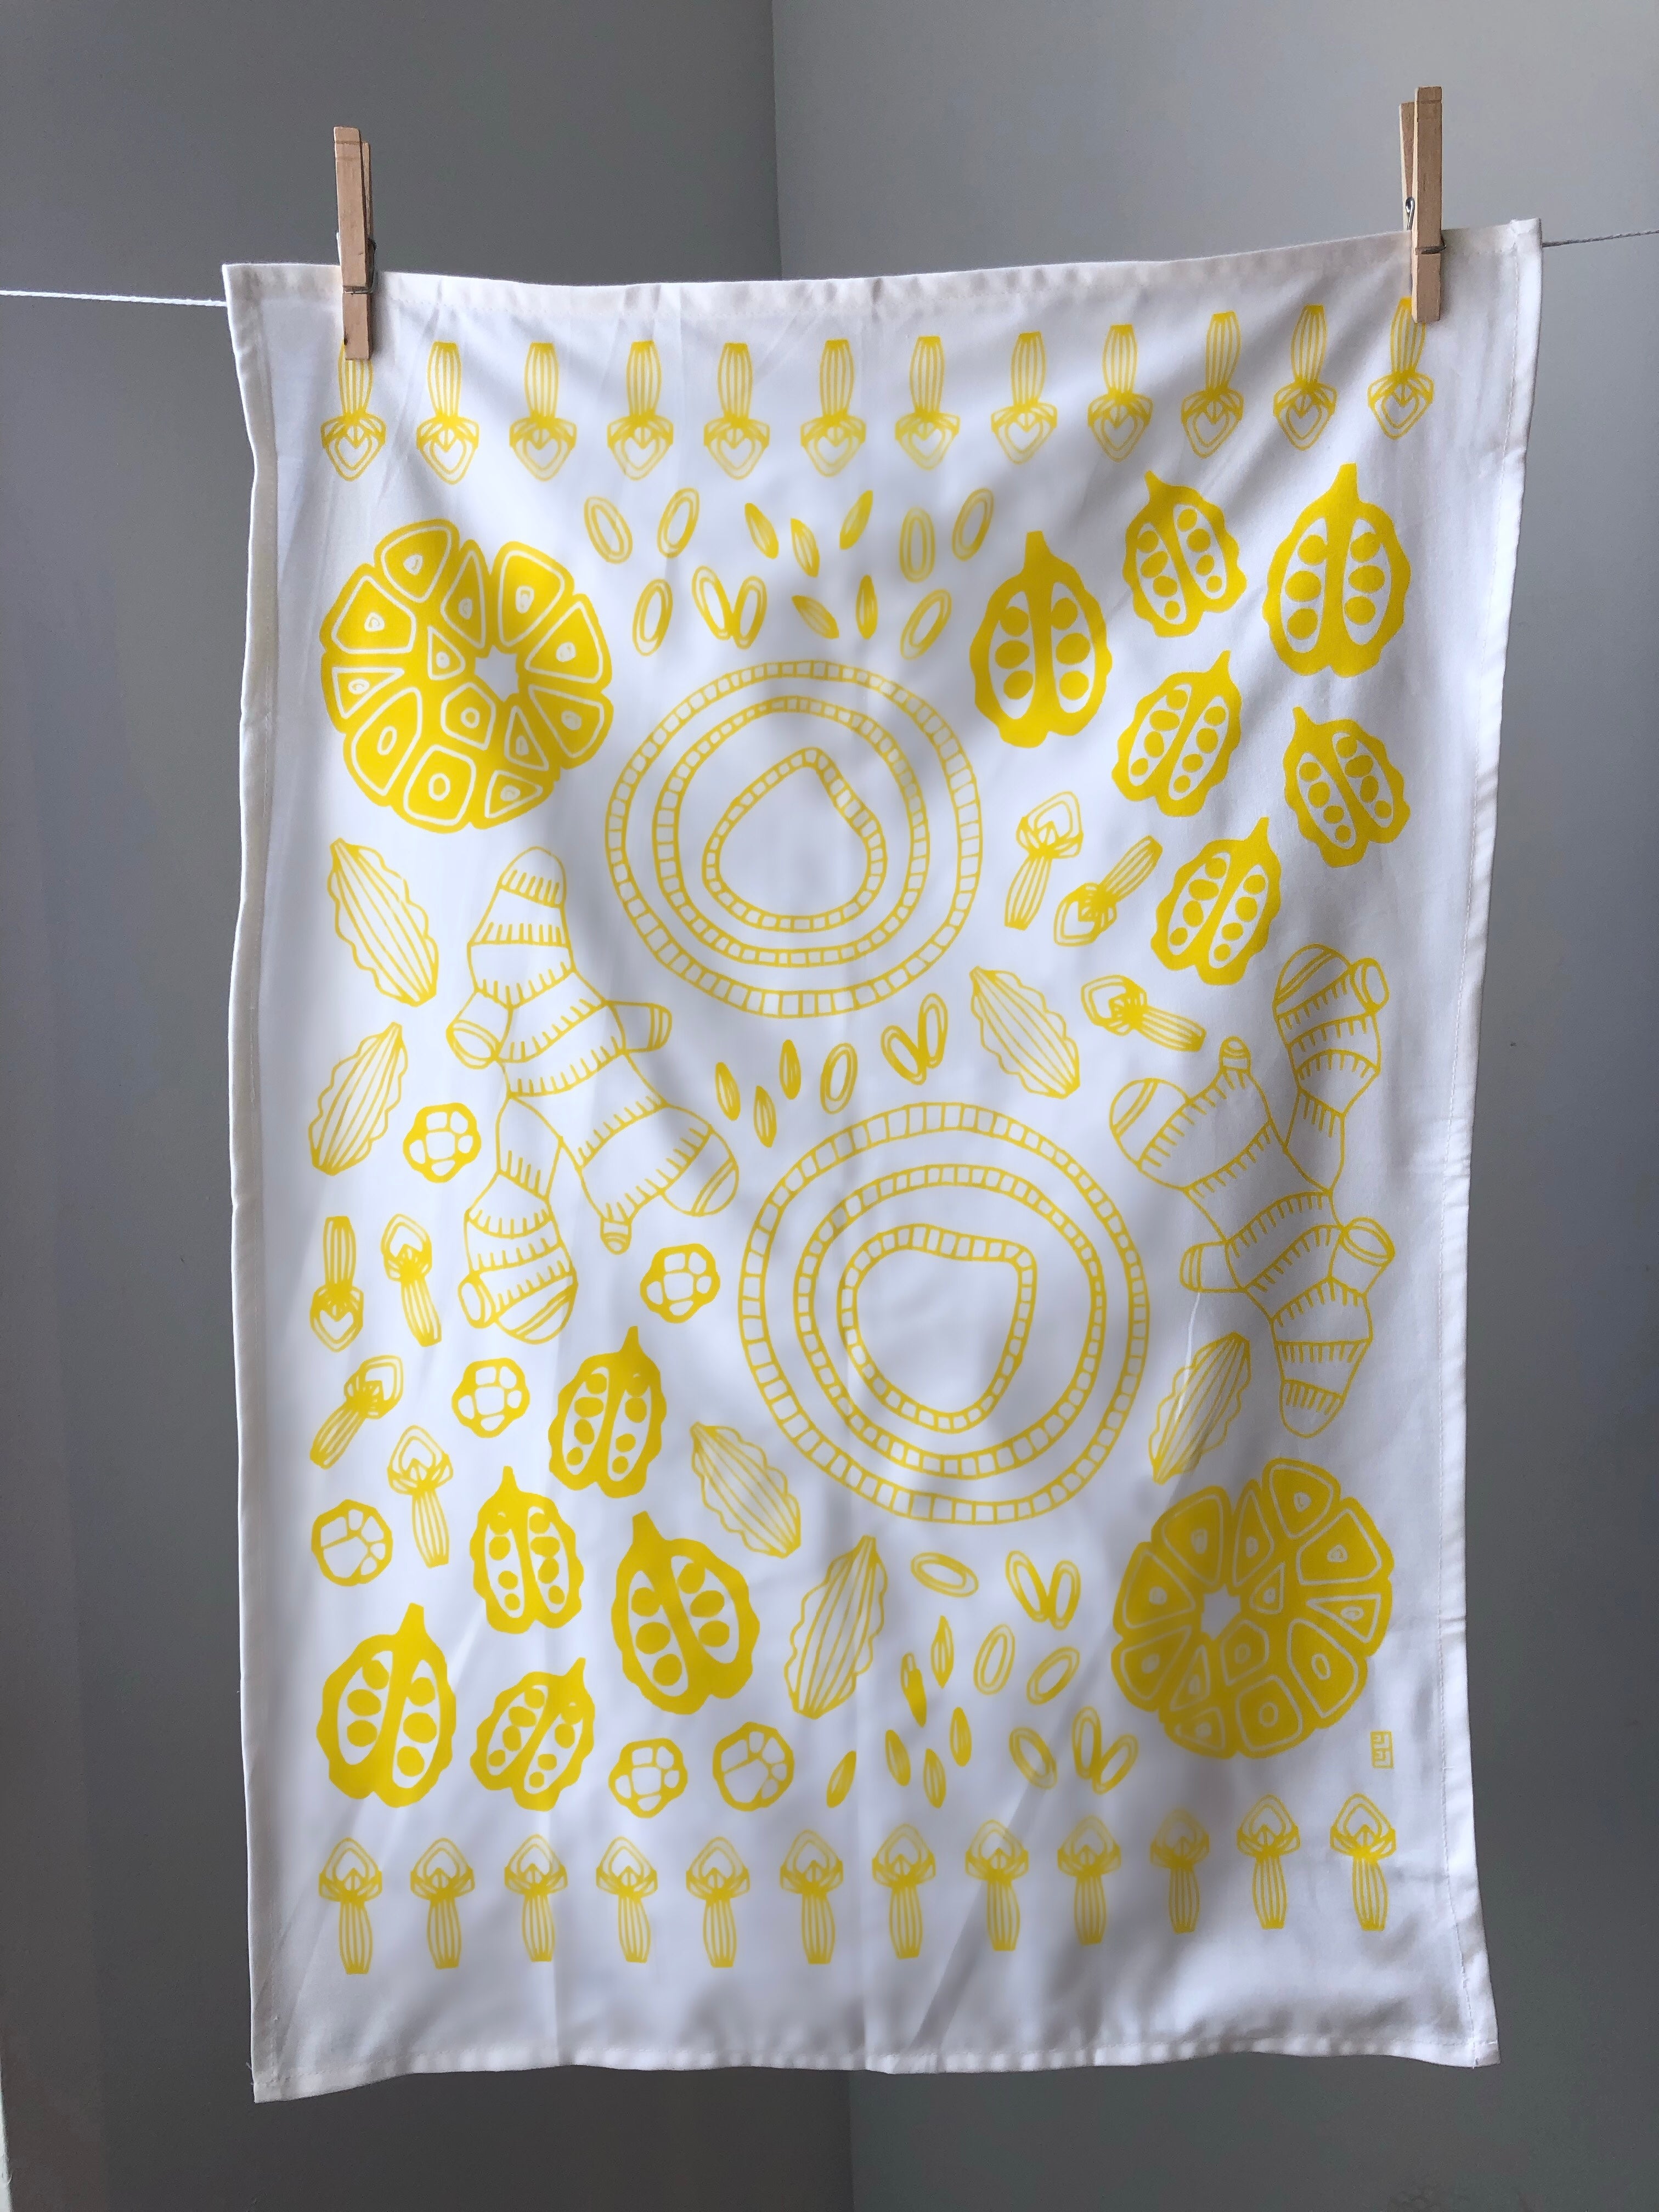 Display of tea towel with vegetable print.